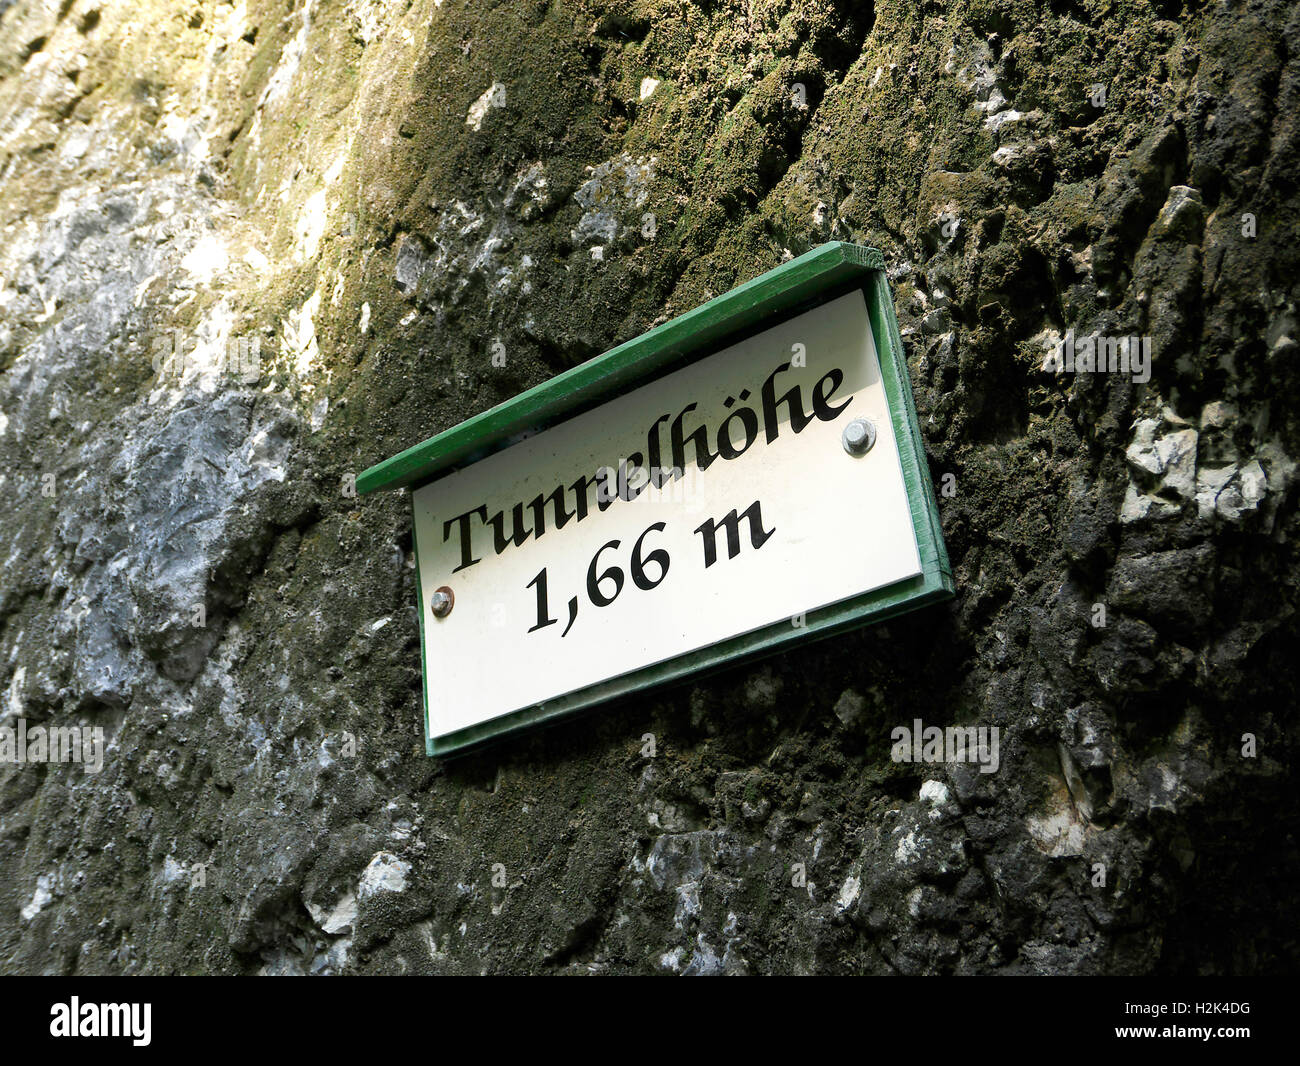 Le parc national de Berchtesgaden Bischofswiesen Almbach Canyon Gorges Sigmund-thun klamm signer Bavière Allemagne Europe. Hauteur 1,66 mètre de tunnel Banque D'Images